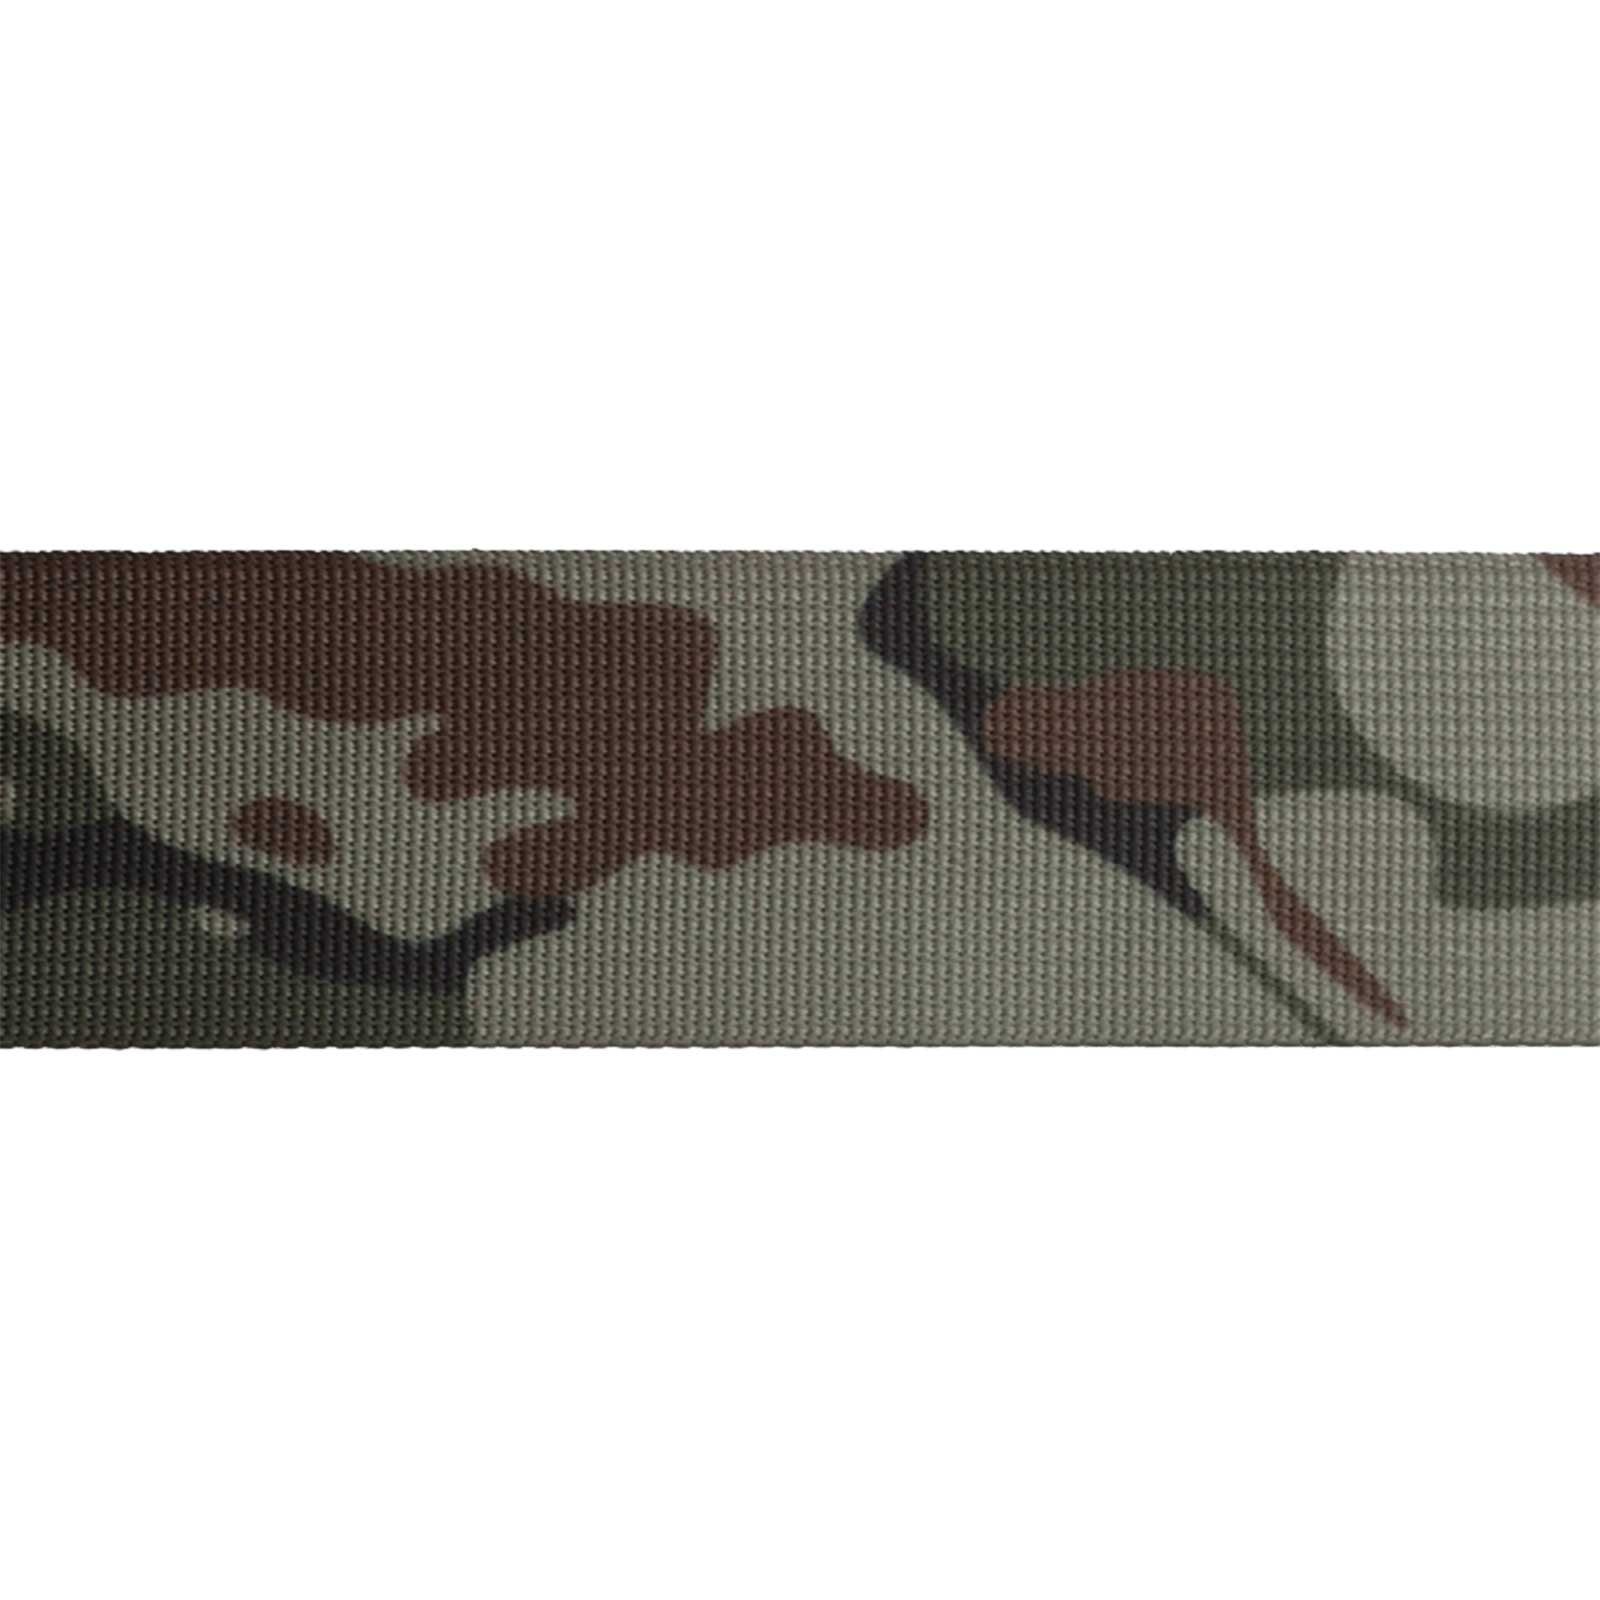 1m Tarnmuster maDDma dark Design camouflage im Gurtband Rollladengurt,